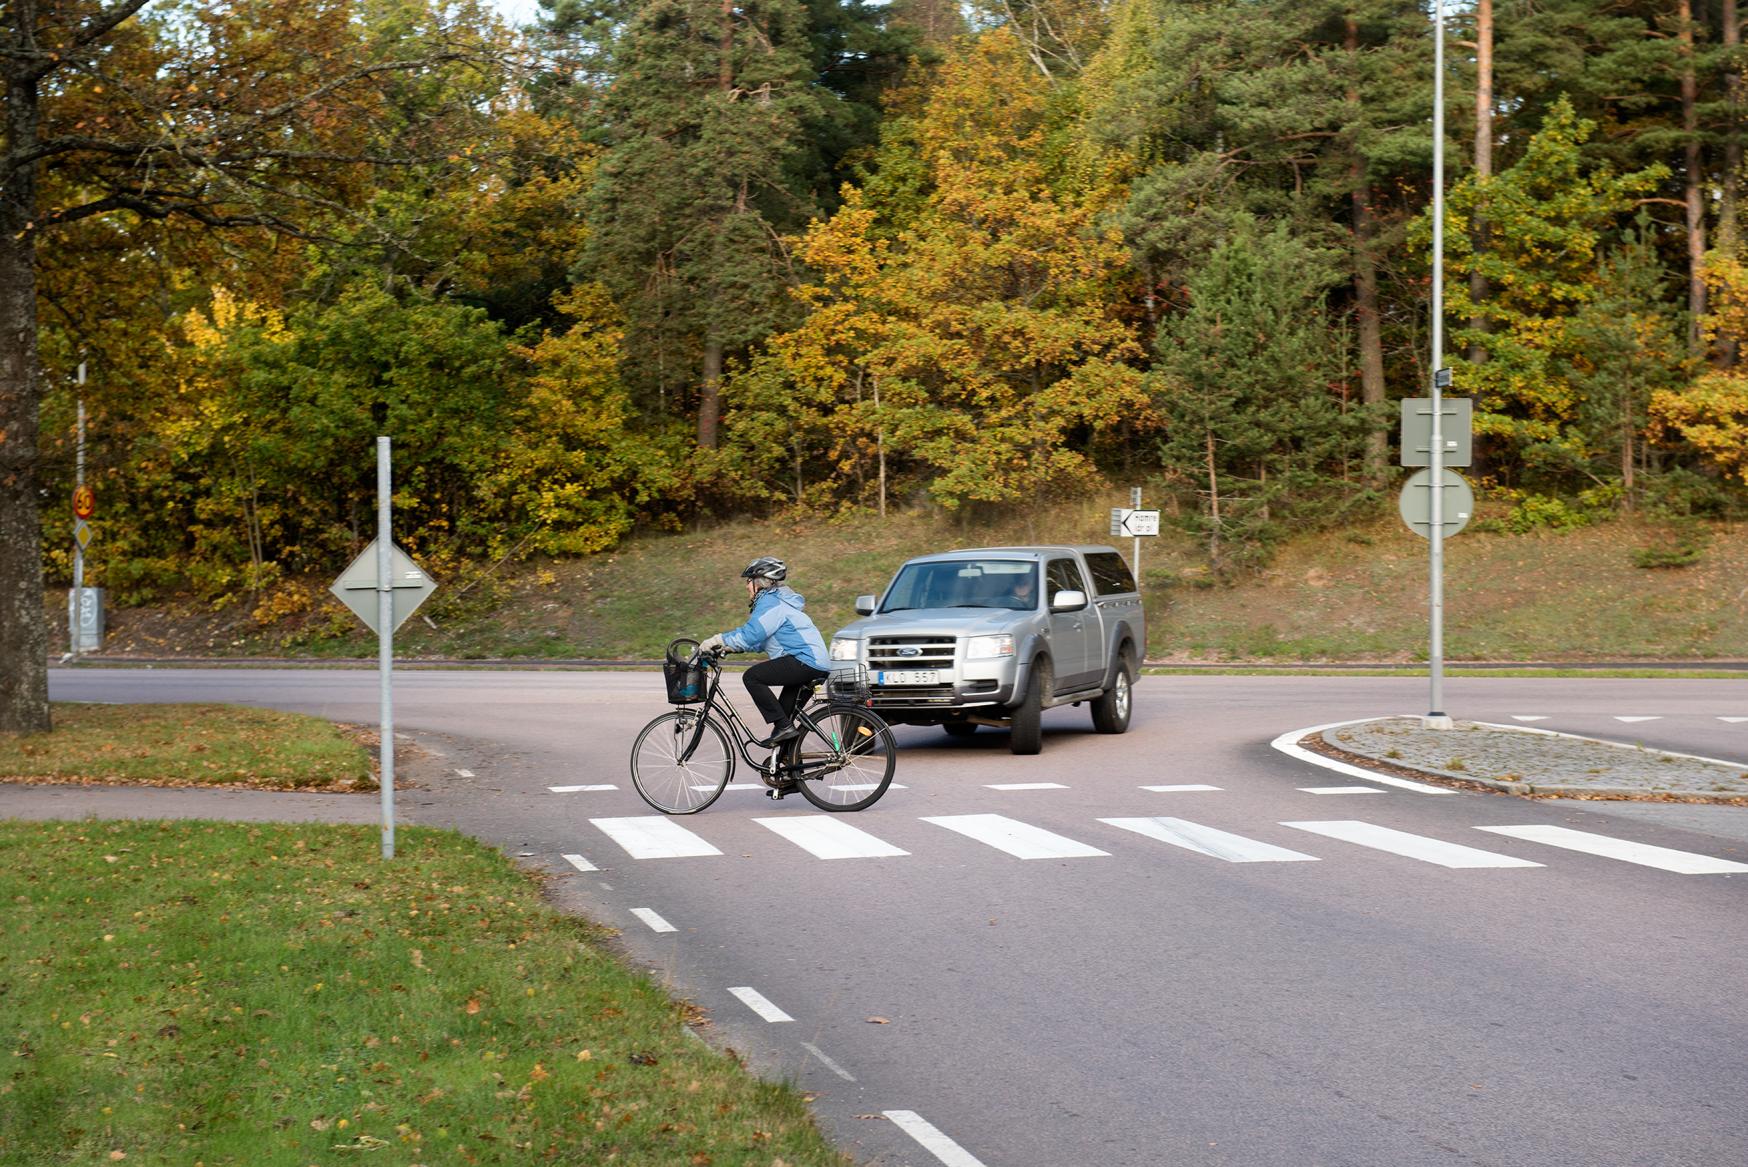 Varför skiljer sig cykelhjälmsanvändningen åt mellan olika städer?